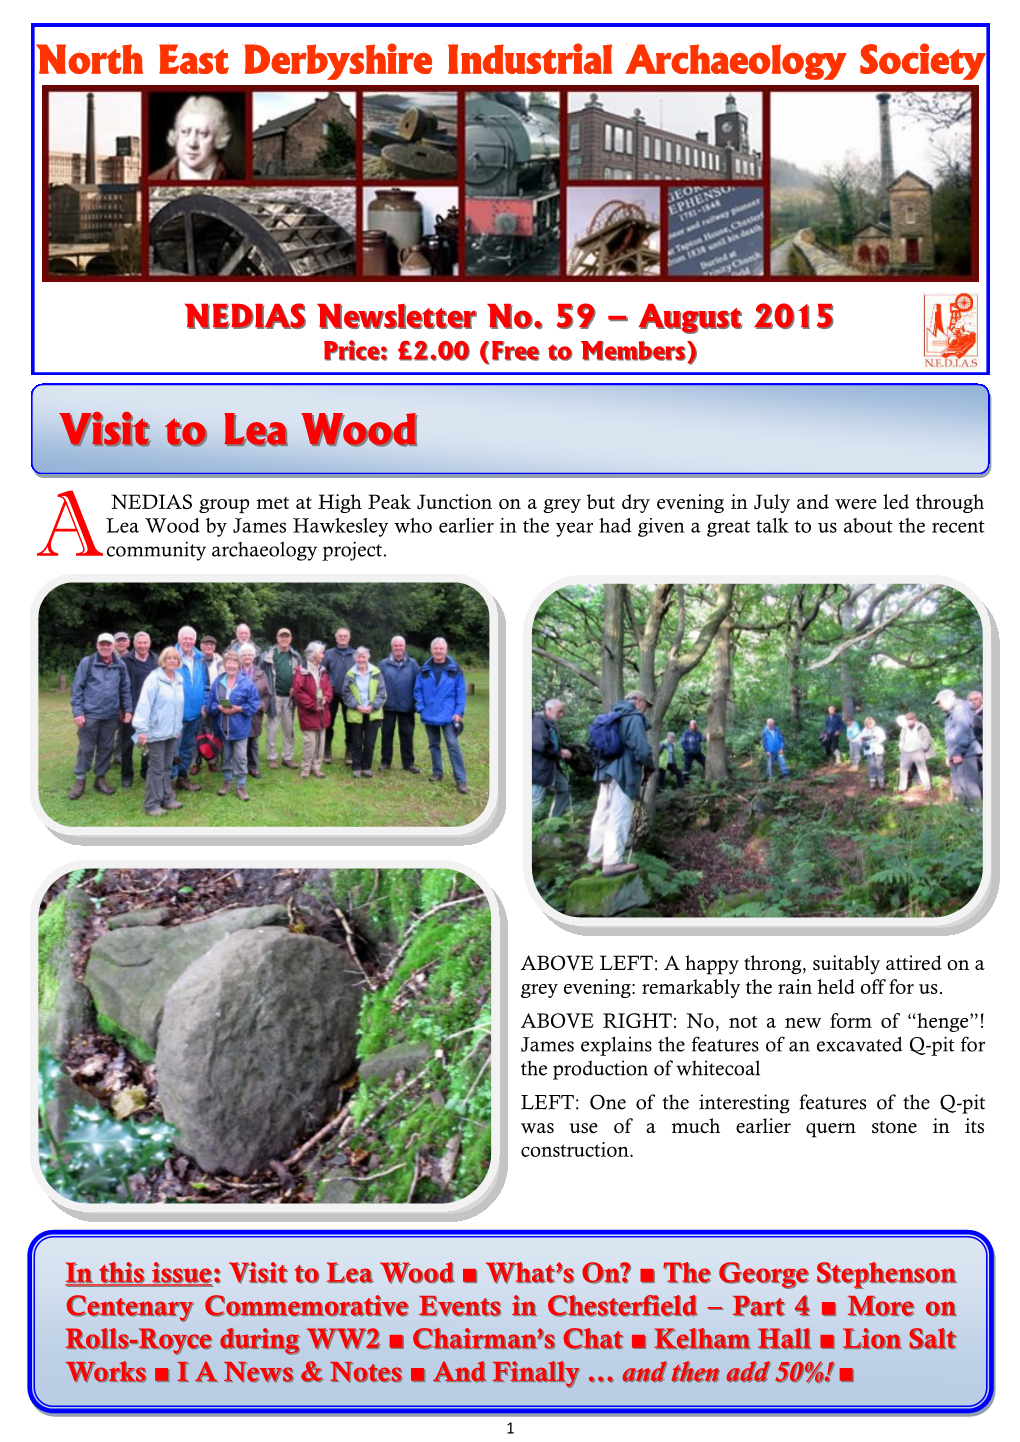 NEDIAS Newsletter No 59 August 2015